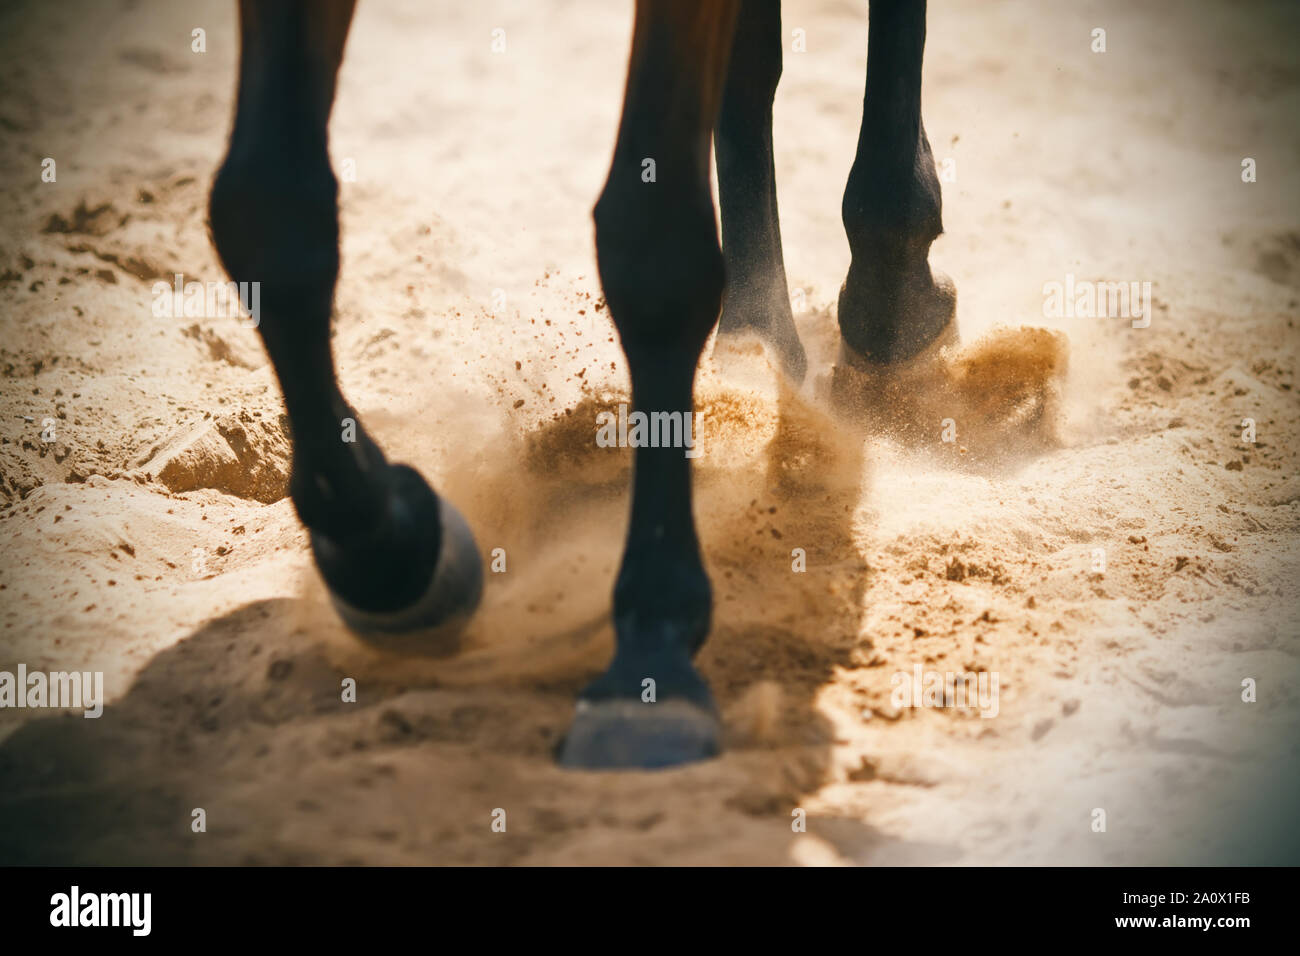 Die hufe eines Bay Horse, läuft auf eine sandige Arena, Sand, Staub, die durch die Strahlen der Sonne beleuchtet wird. Stockfoto